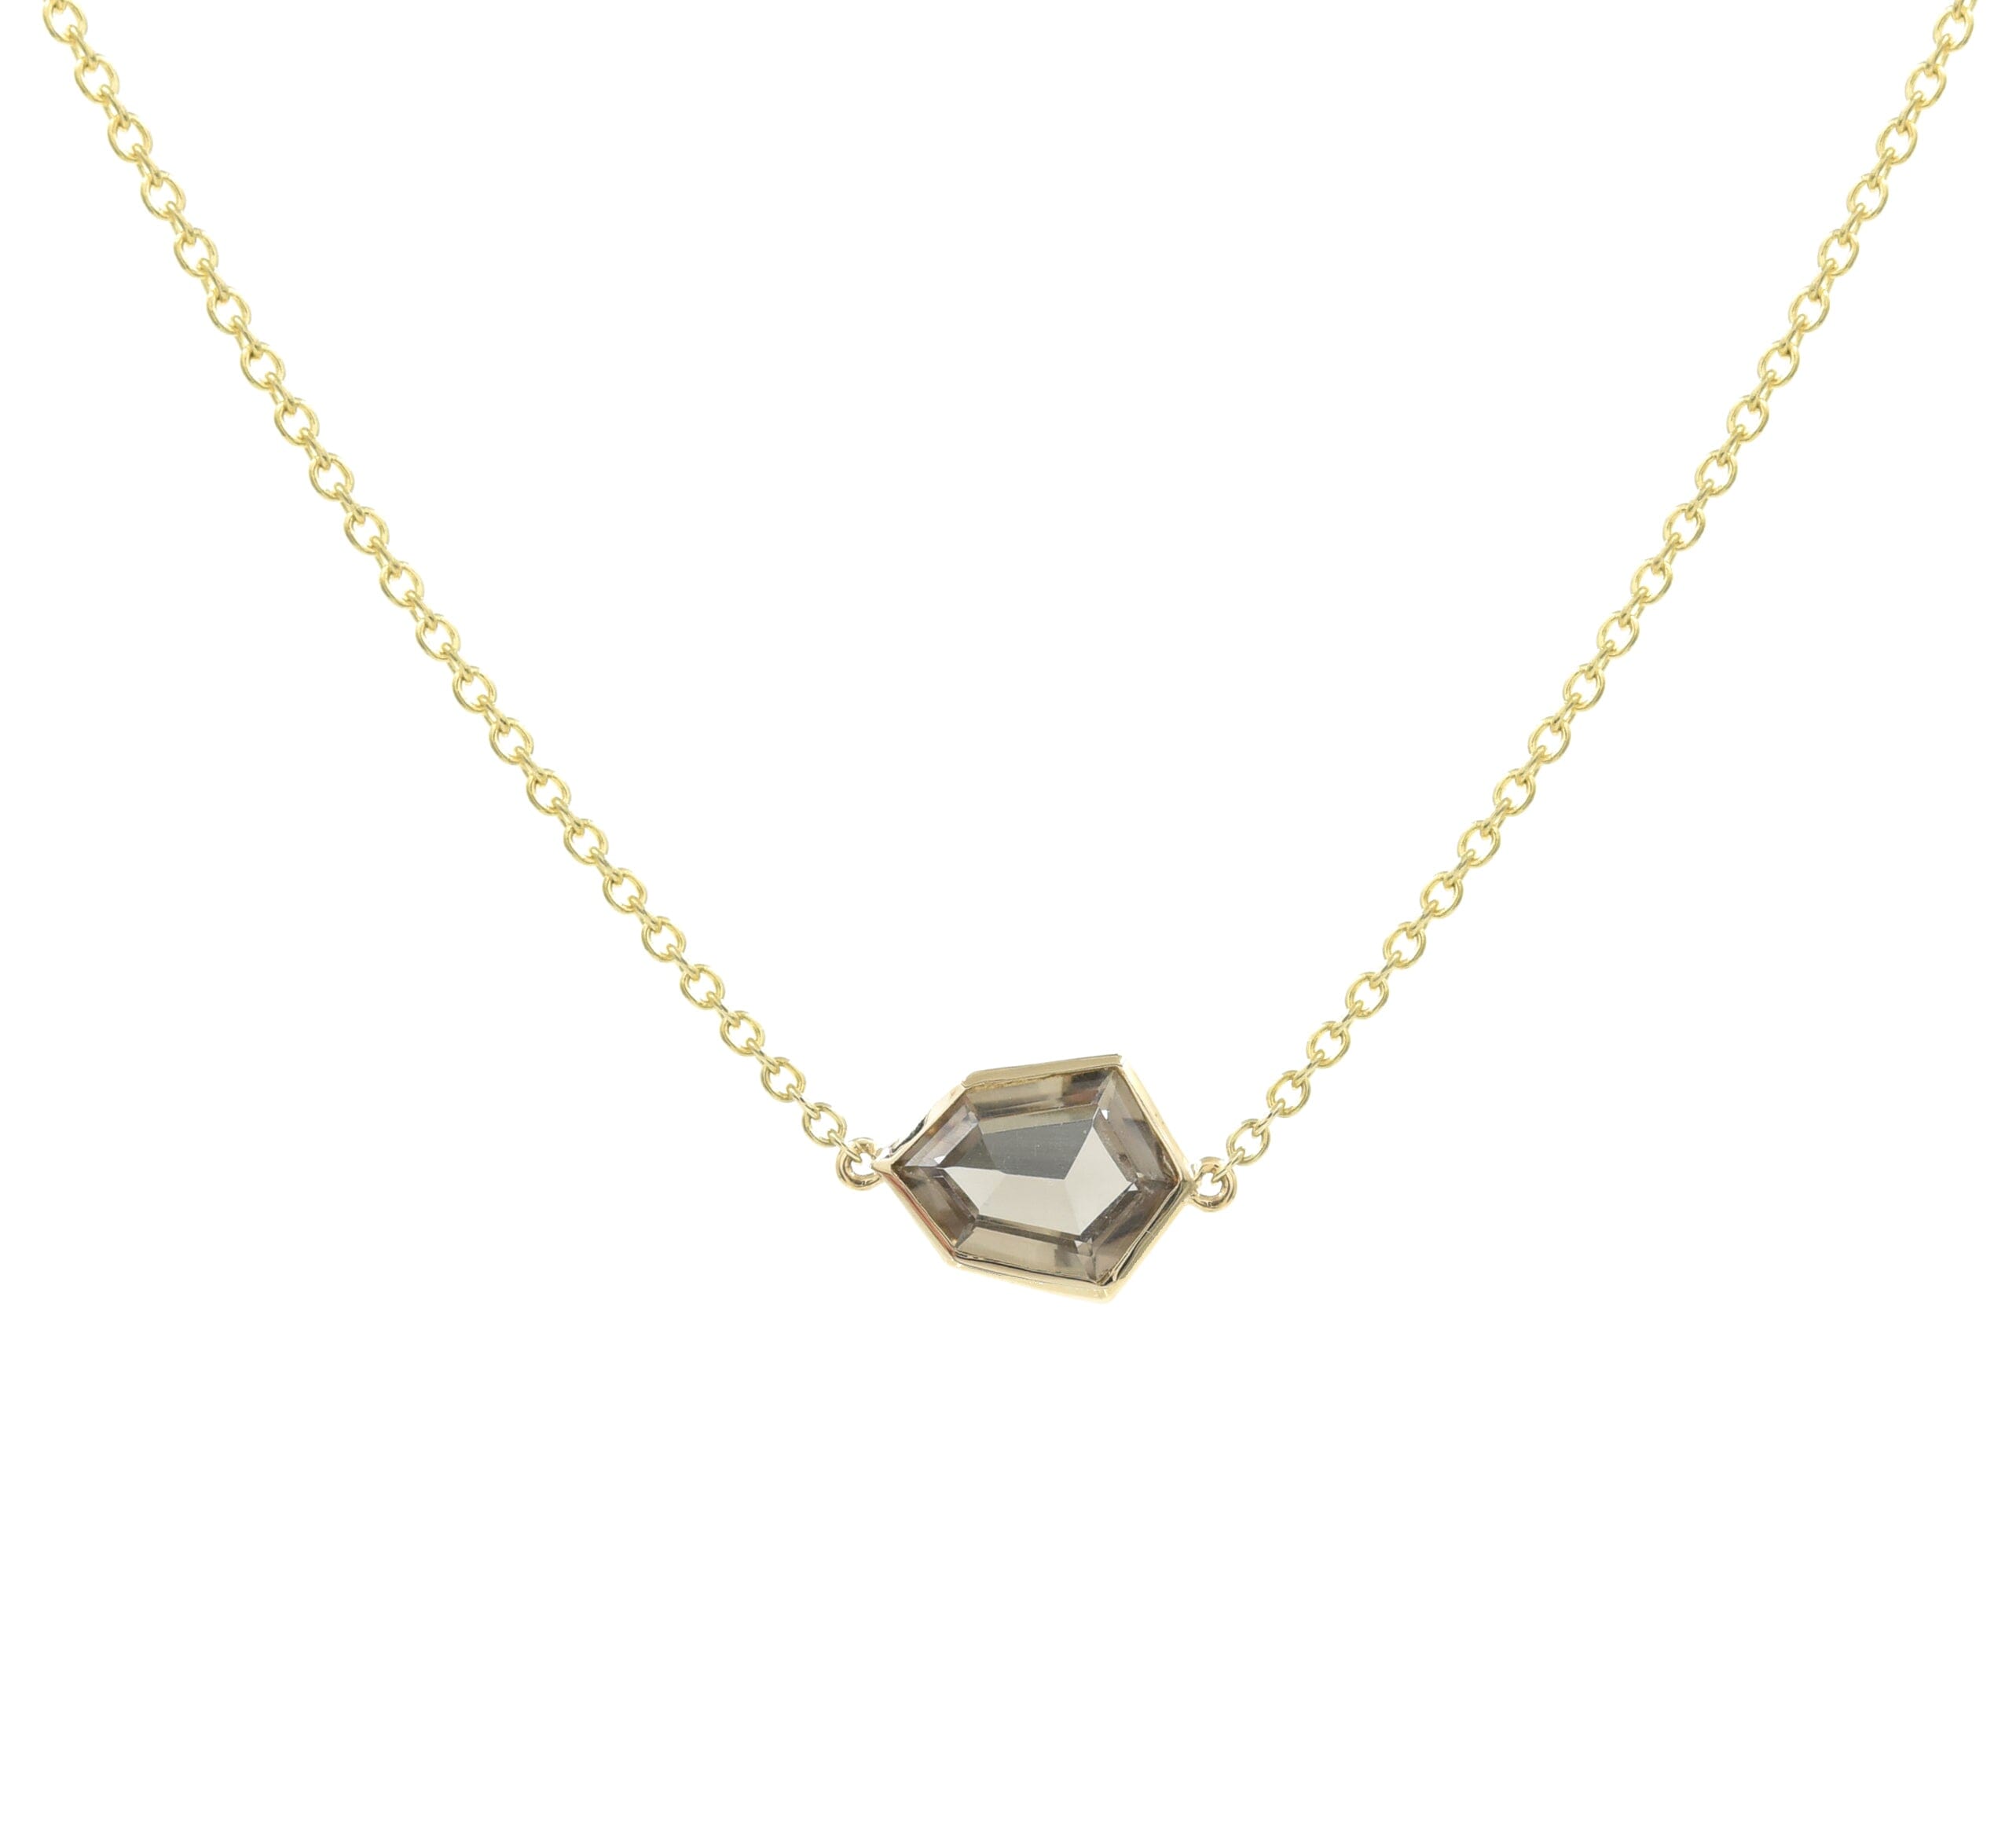 Night Shield Jollie Necklace Necklaces - BONDEYE JEWELRY ®